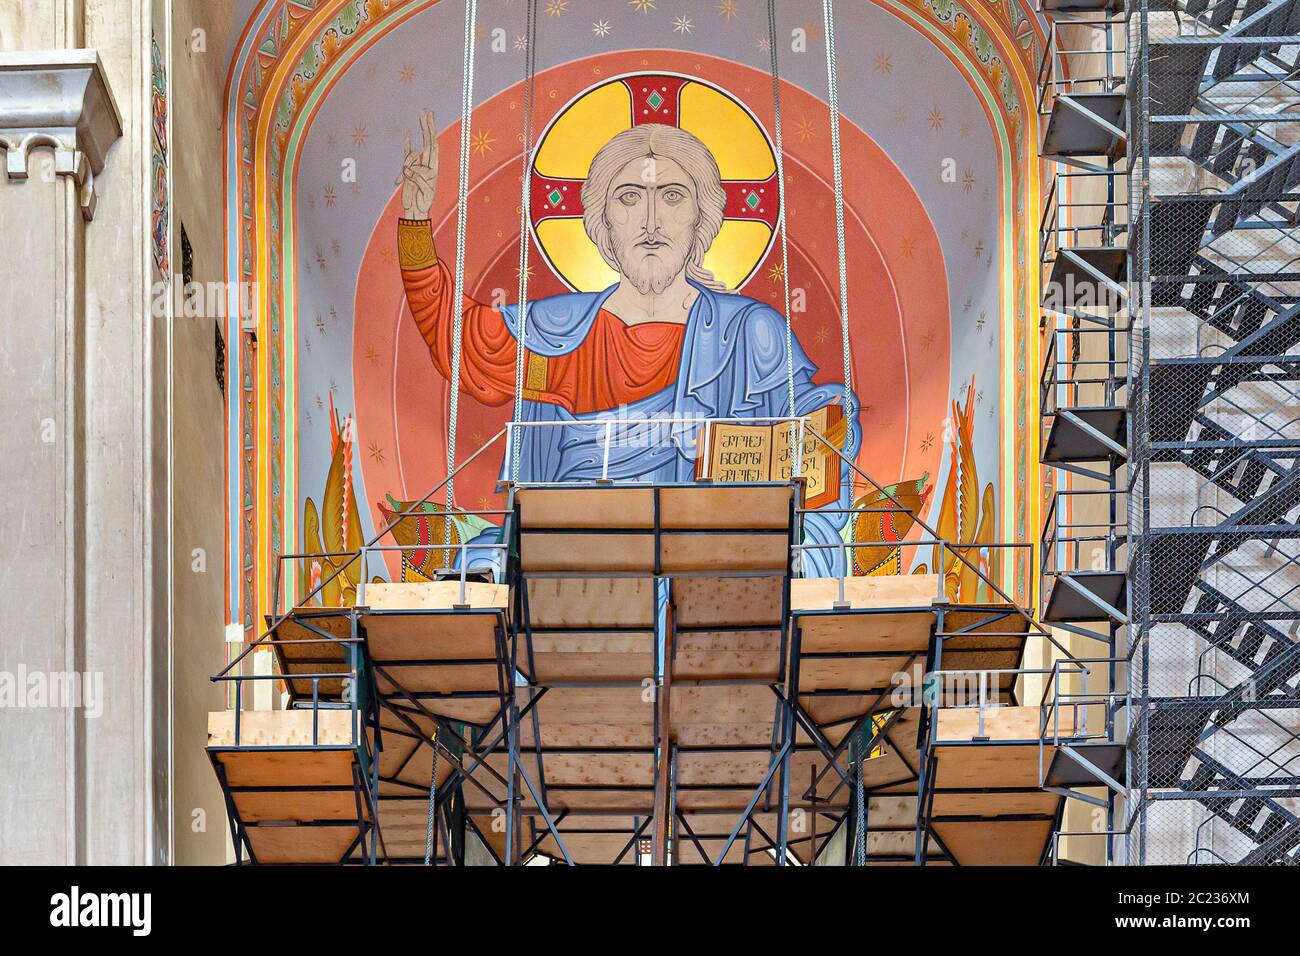 Travaux de restauration et peinture de l'image de Jésus-Christ dans la cathédrale de Sameba, connue aussi sous le nom de cathédrale Sainte-Trinité, à Tbilissi, en Géorgie, en 2017 Banque D'Images